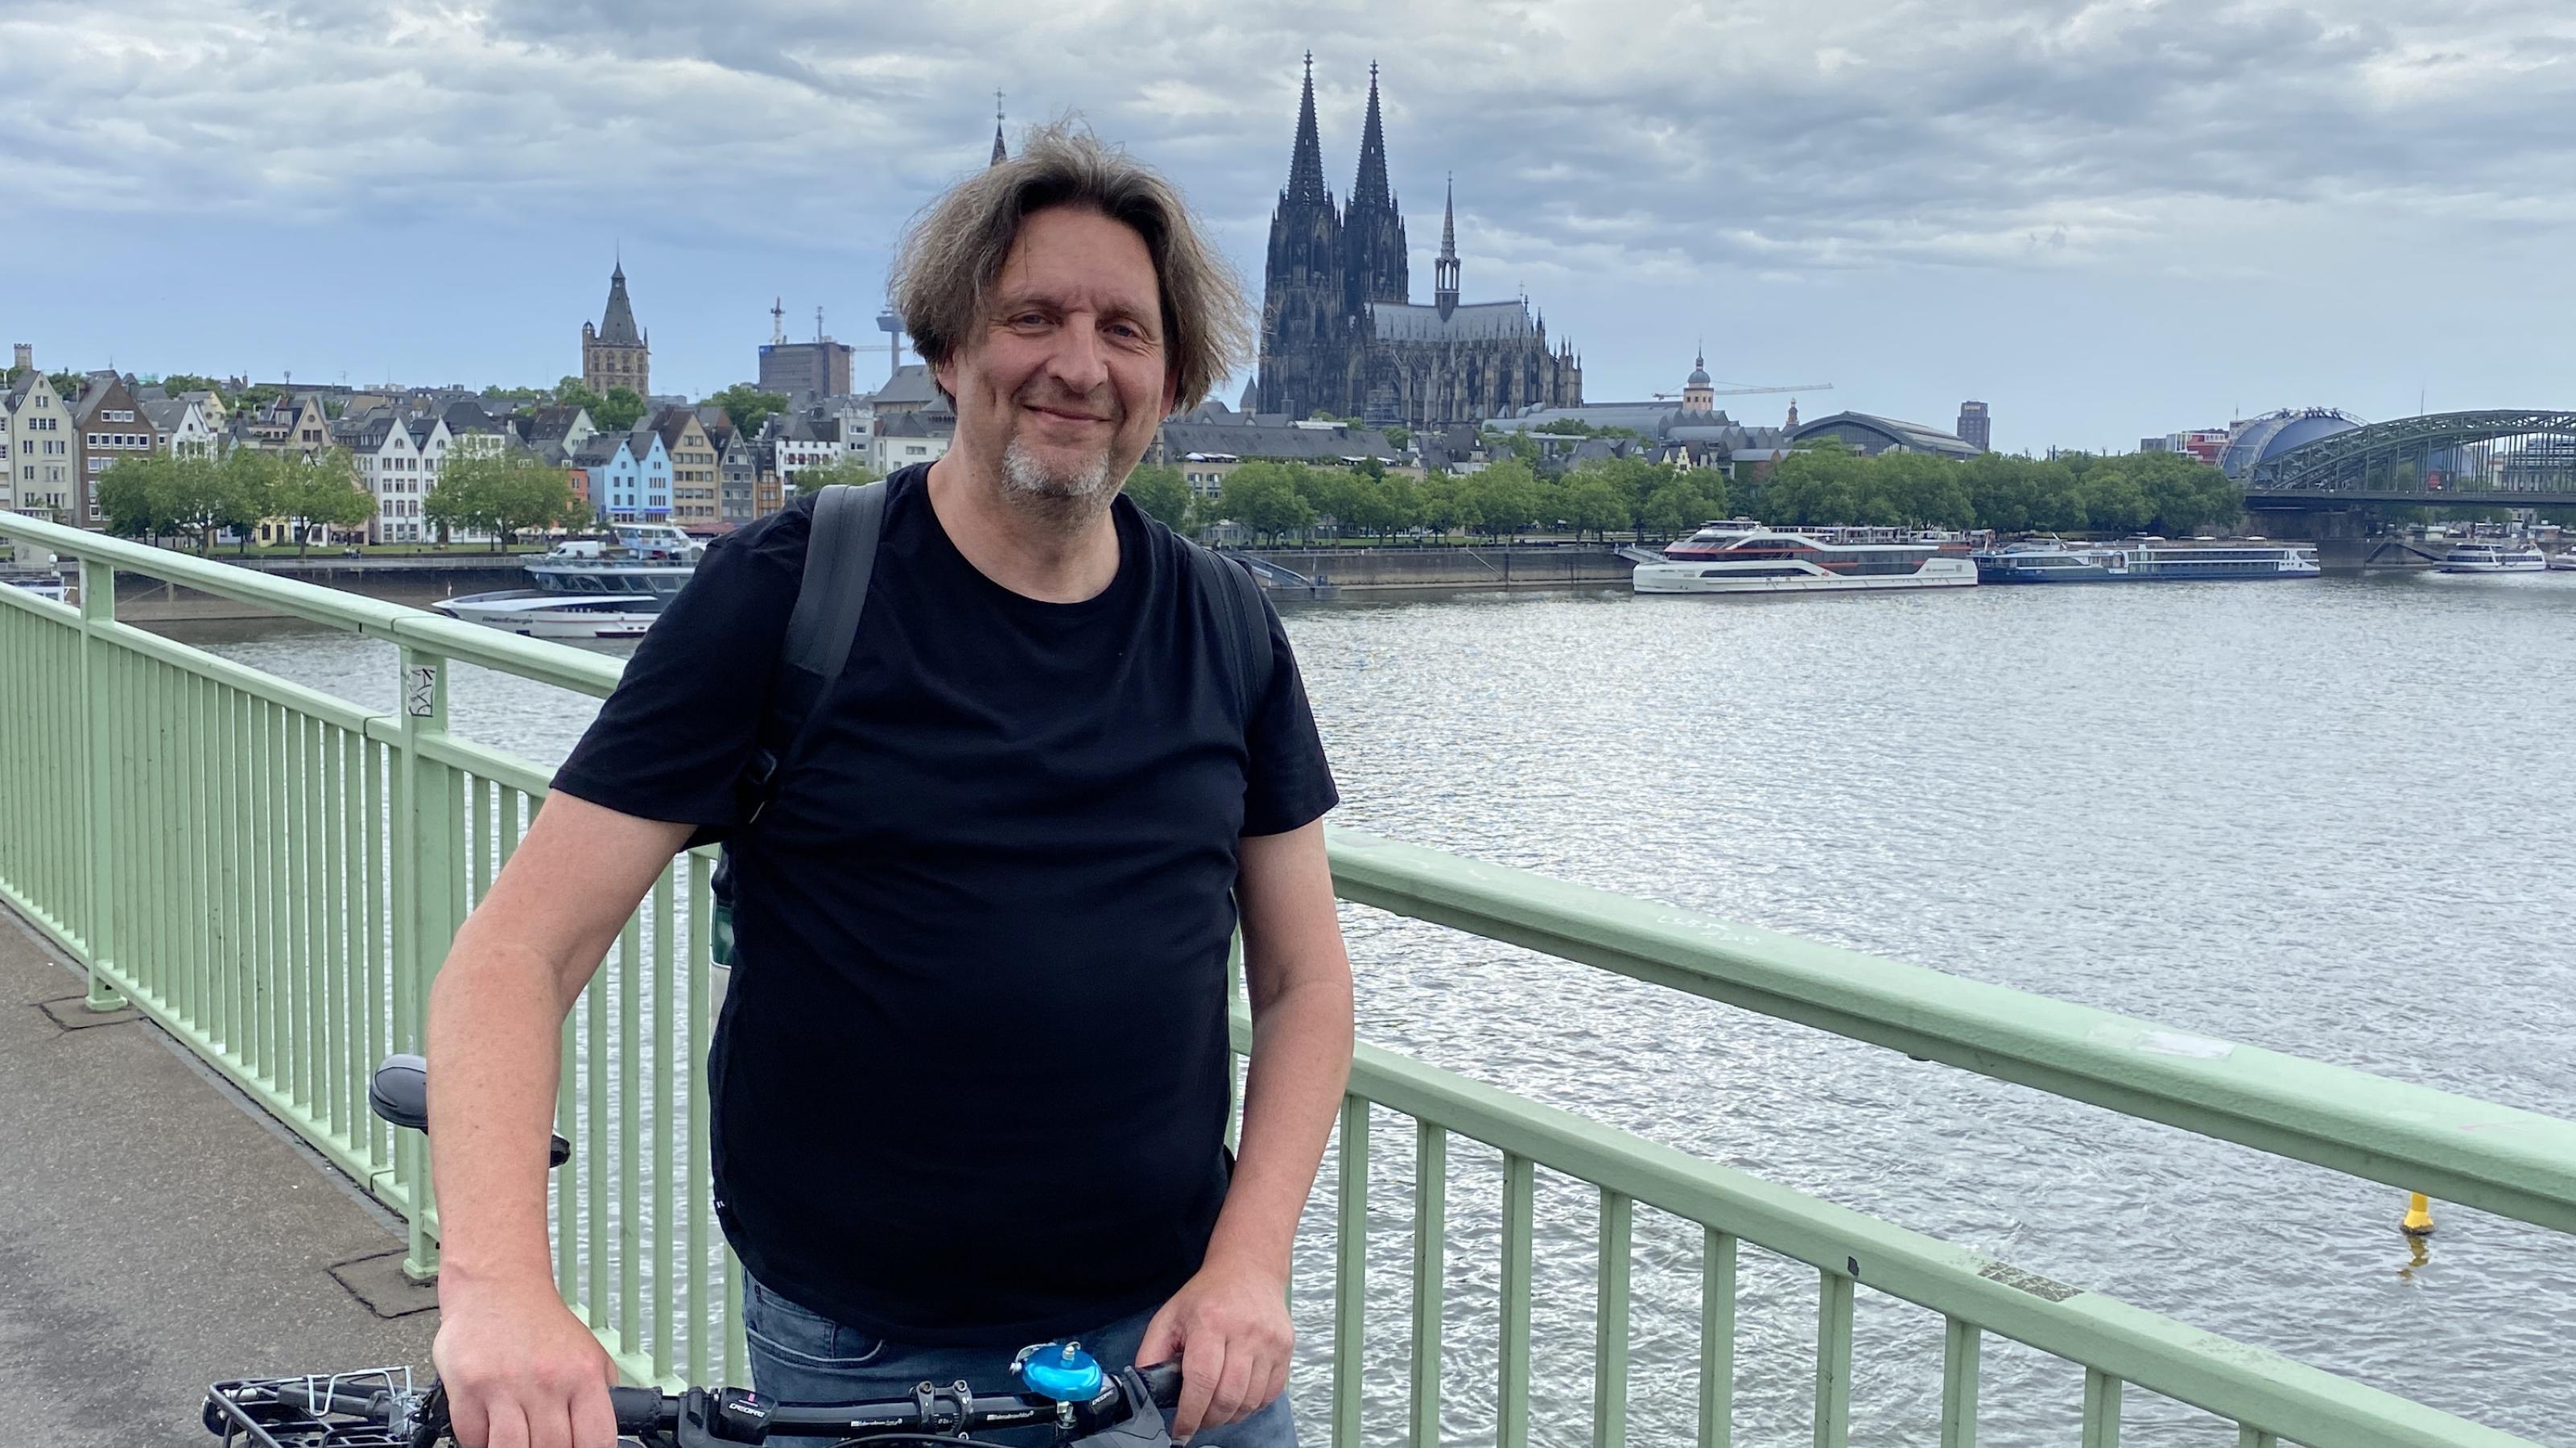 Ein Mann steht mit seinem Fahrrad auf einer Brücke. Im Hintergrund ist der Kölner Dom zu sehen.